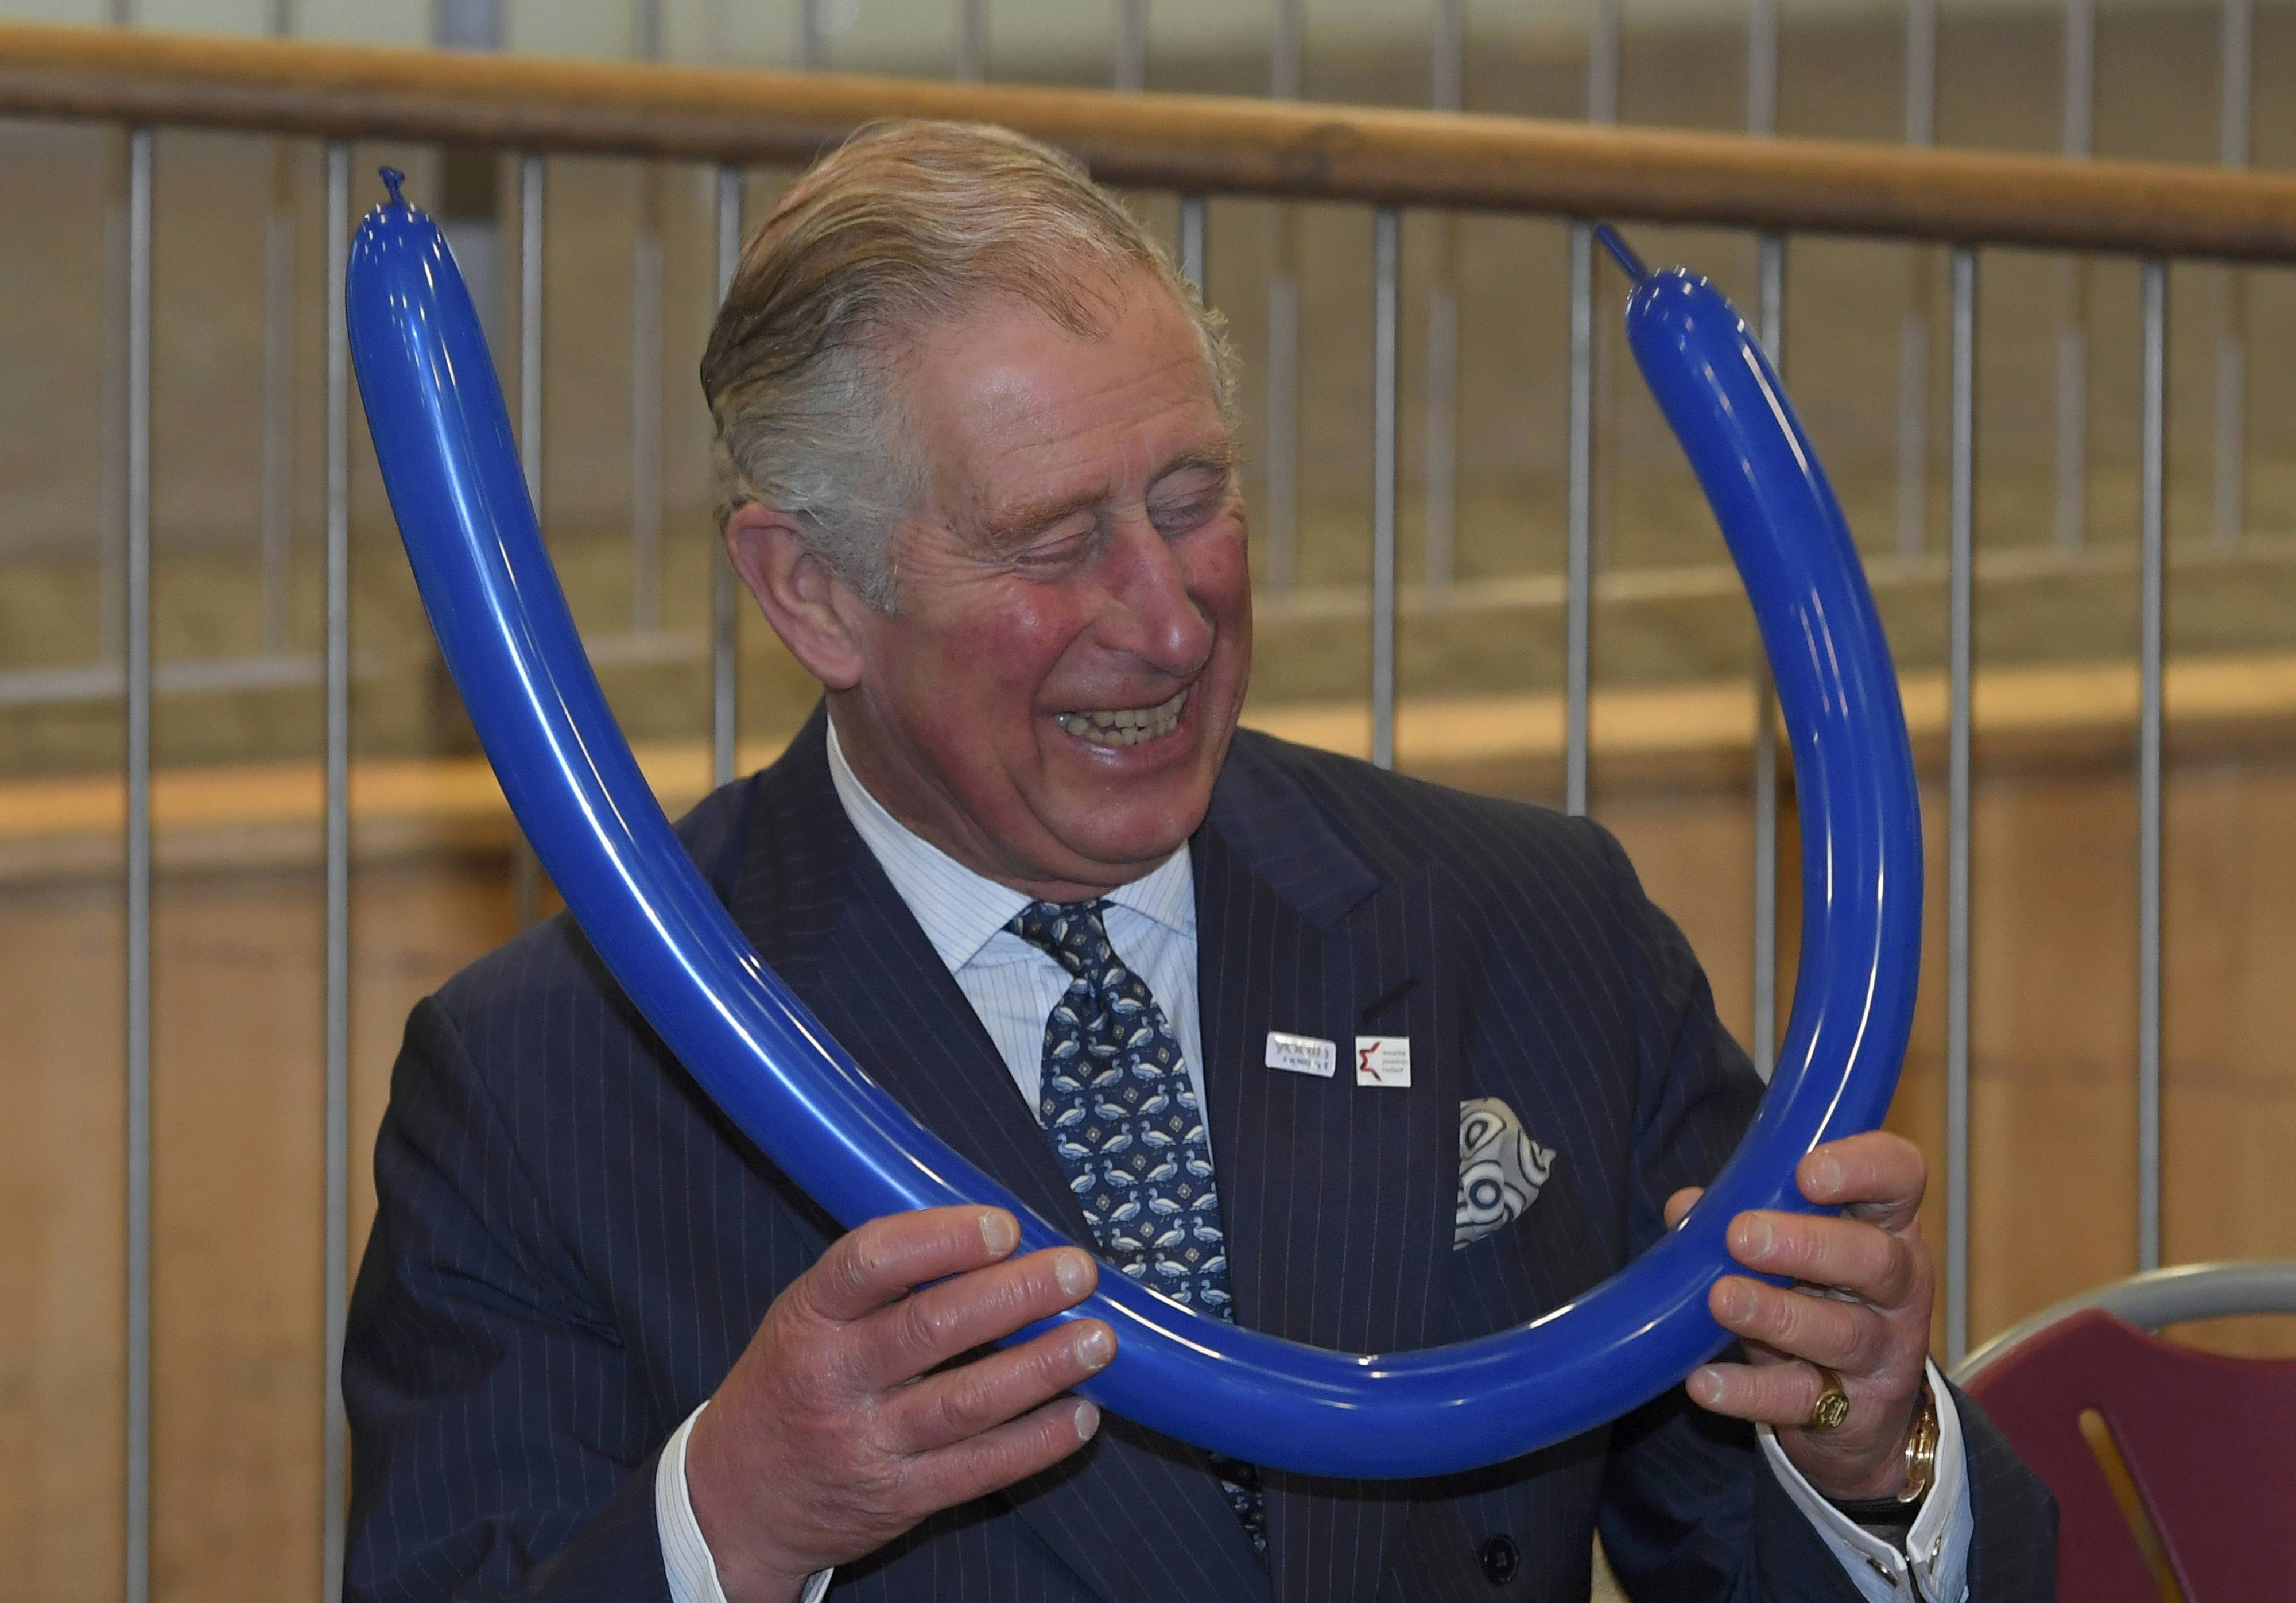 الأمير تشارلز يشارك فى درس صناعة أغطية الرأس بالبالونات خلال زيارته لكلية يفنيه